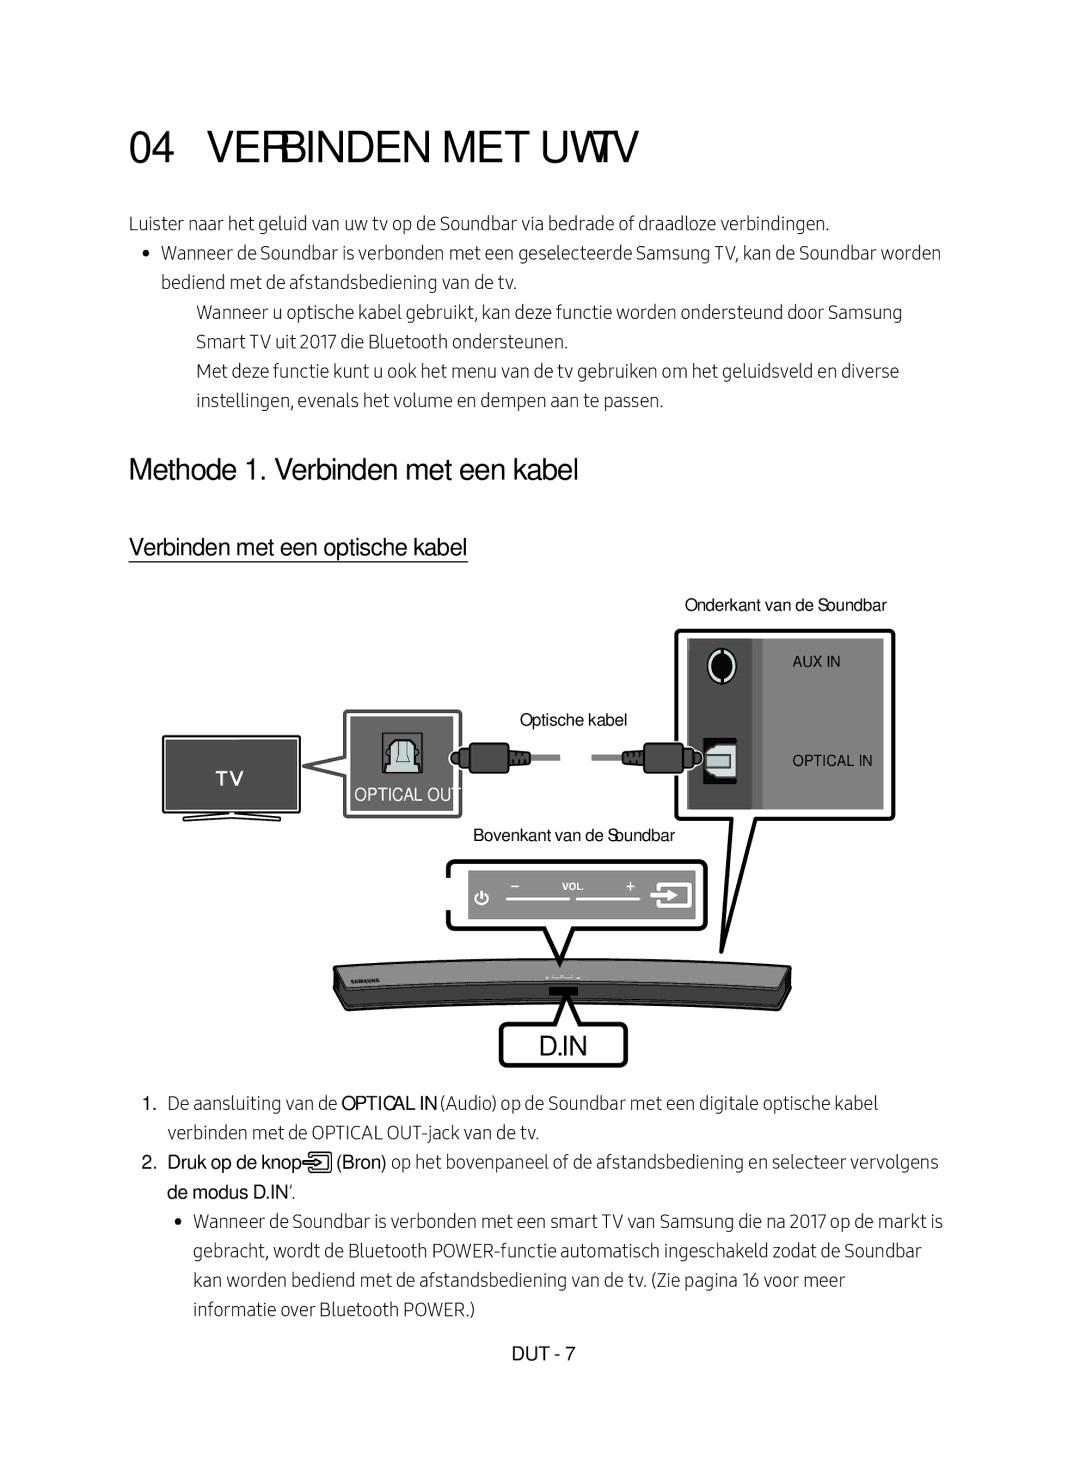 Samsung HW-M4500/EN manual Verbinden met uw TV, Methode 1. Verbinden met een kabel, Verbinden met een optische kabel 